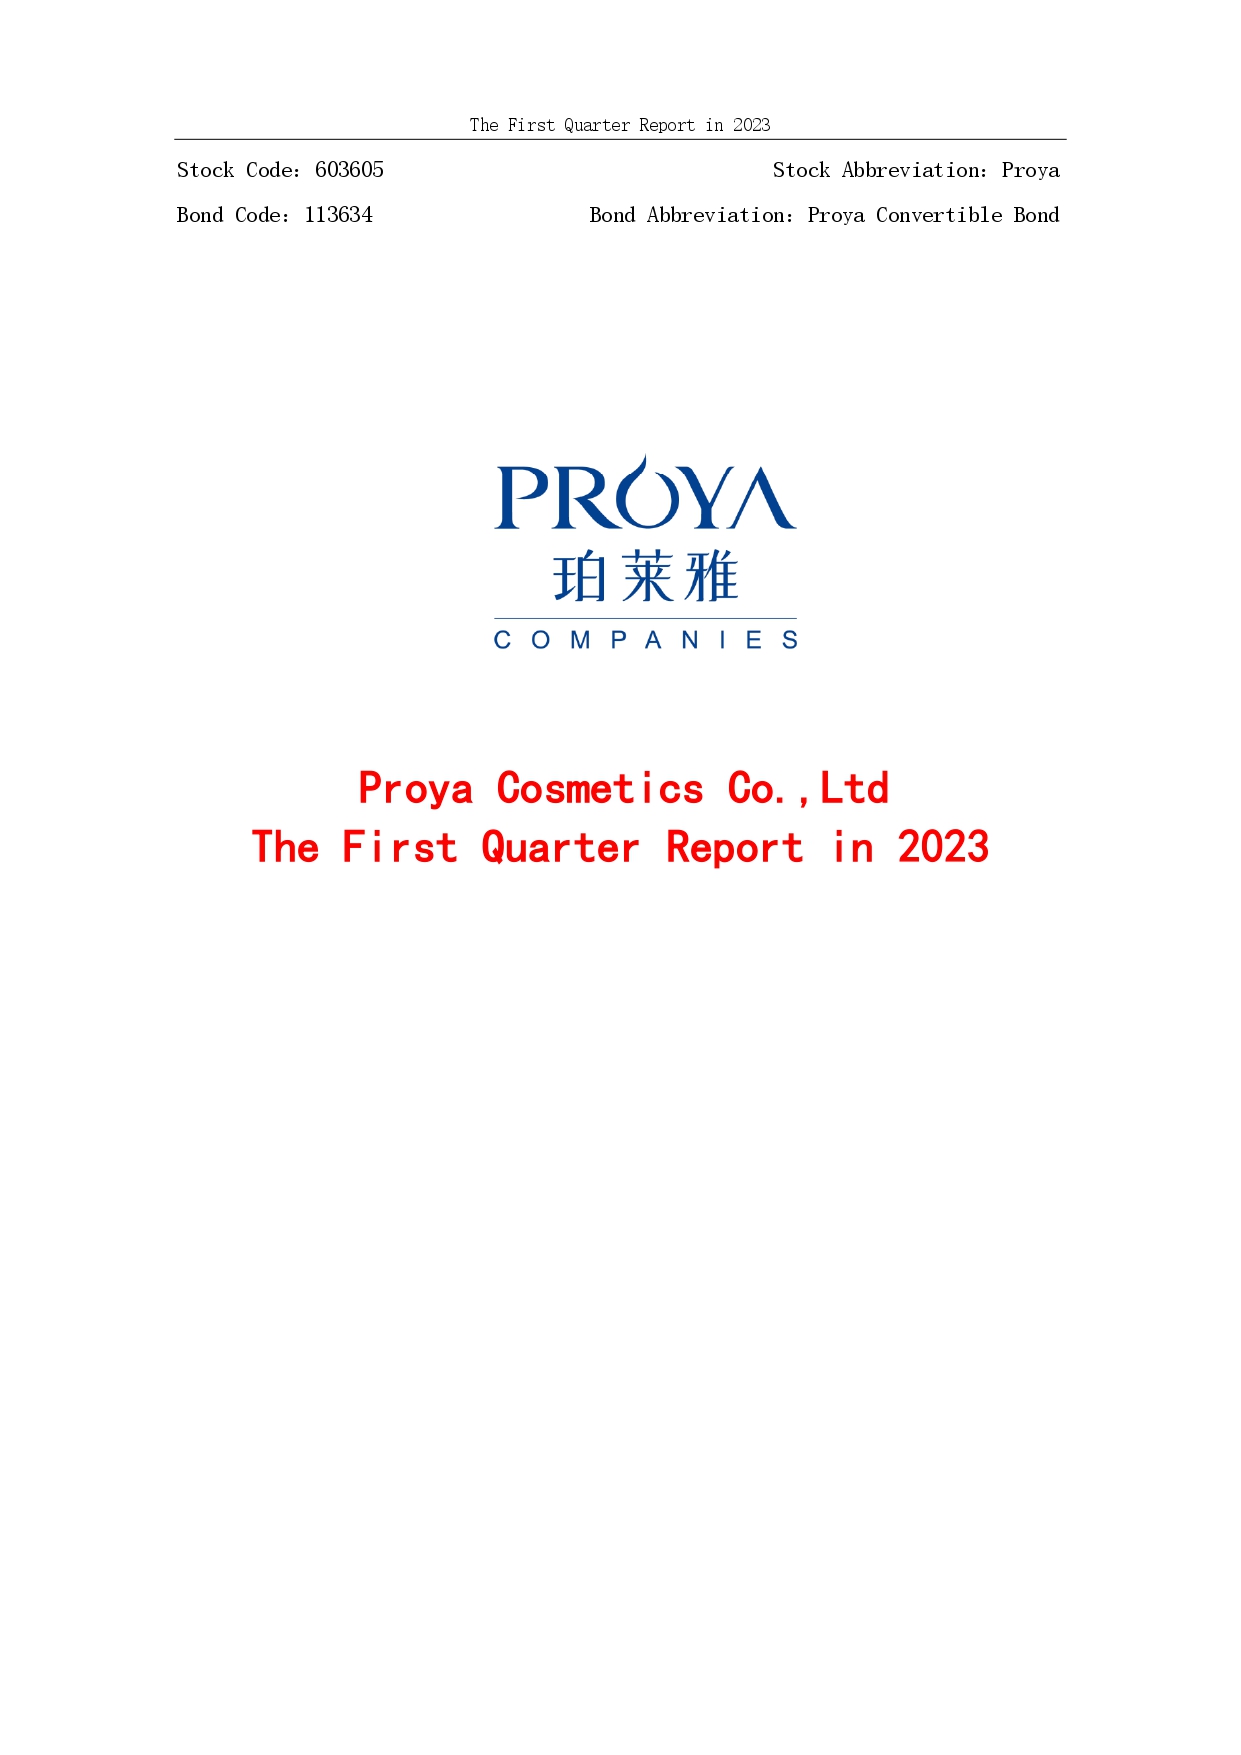 2023年第一季度报告封面_page-0001.jpg